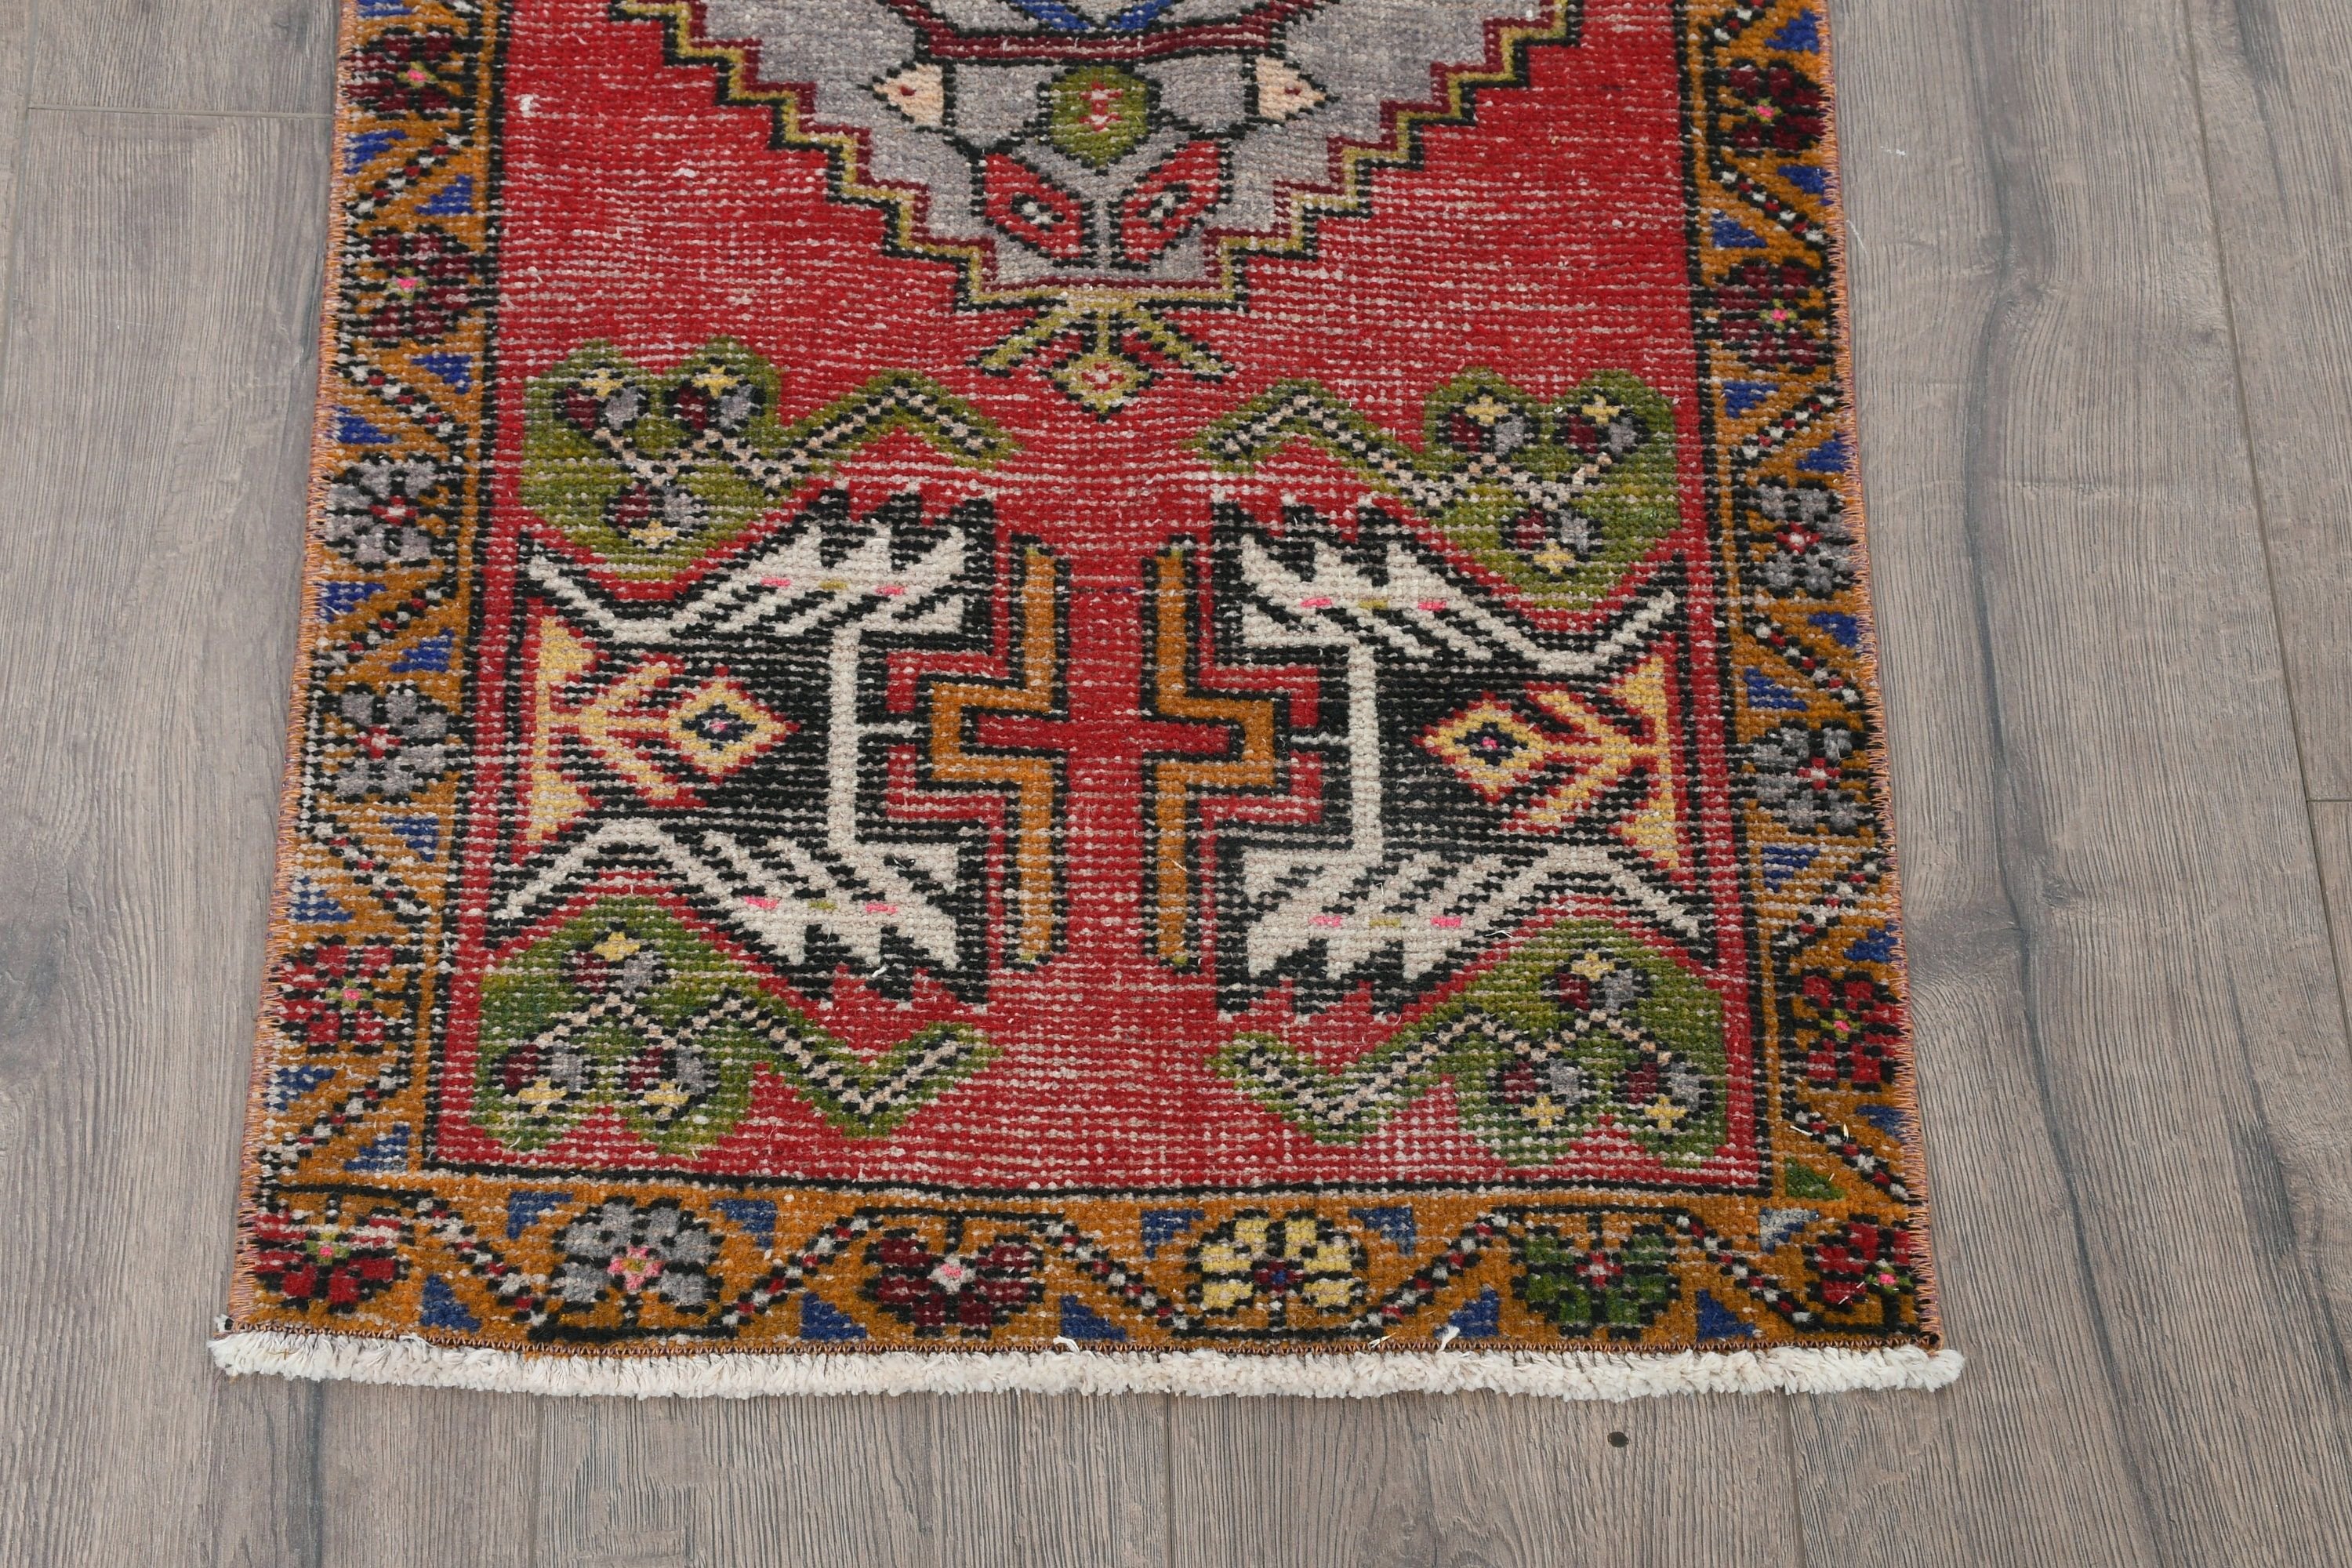 Oriental Rug, Rugs for Bedroom, 1.7x3.3 ft Small Rug, Red Moroccan Rugs, Bath Rugs, Turkish Rugs, Antique Rug, Vintage Rug, Nursery Rugs